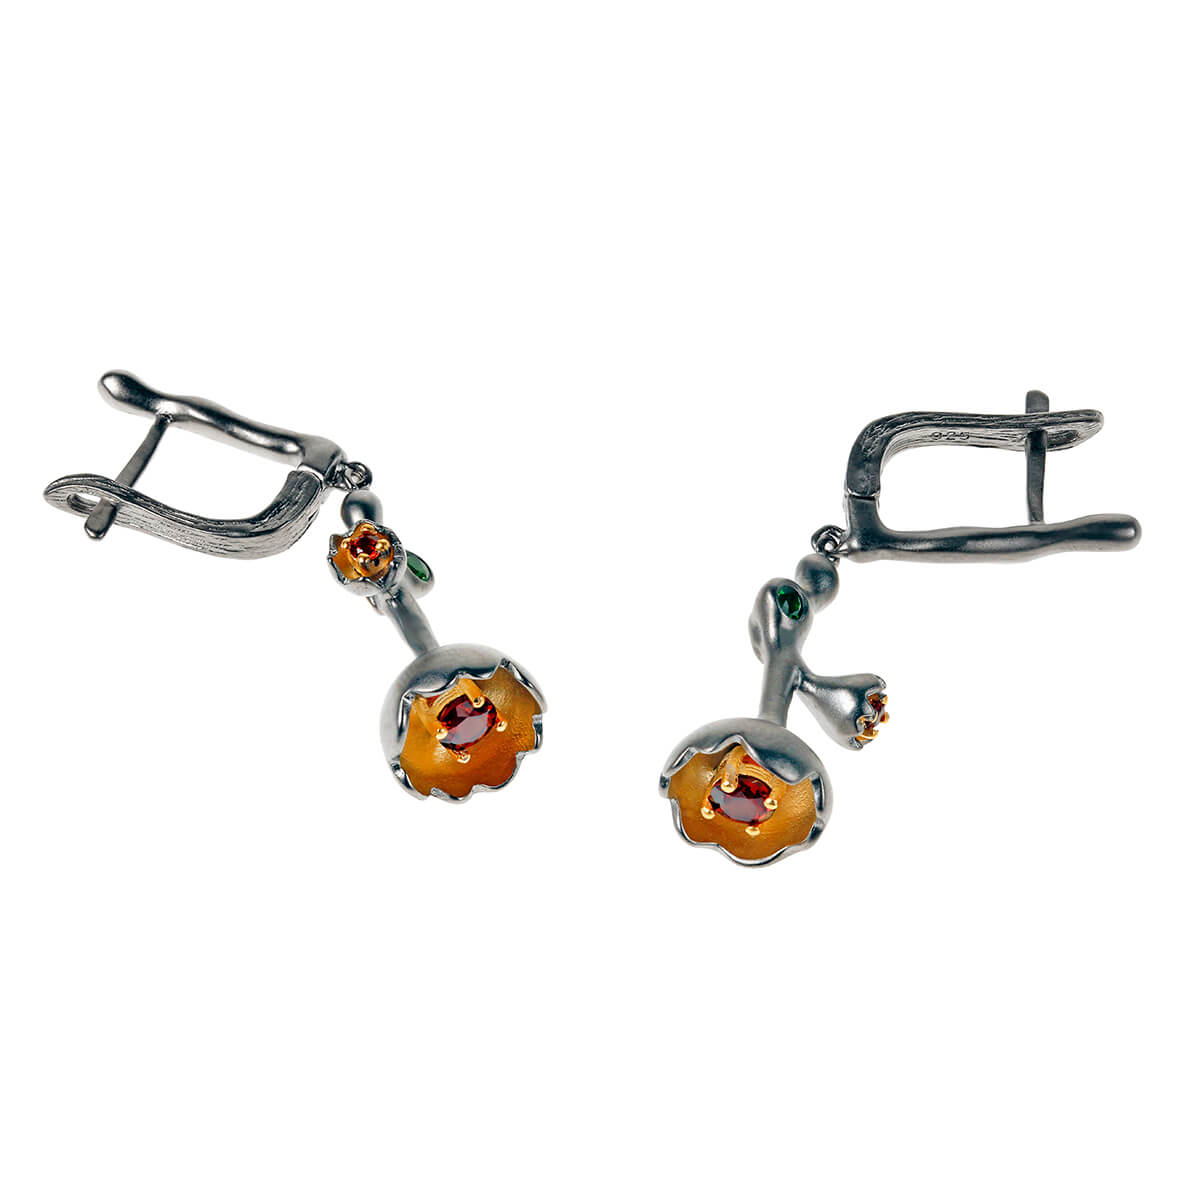 Dhriti earrings